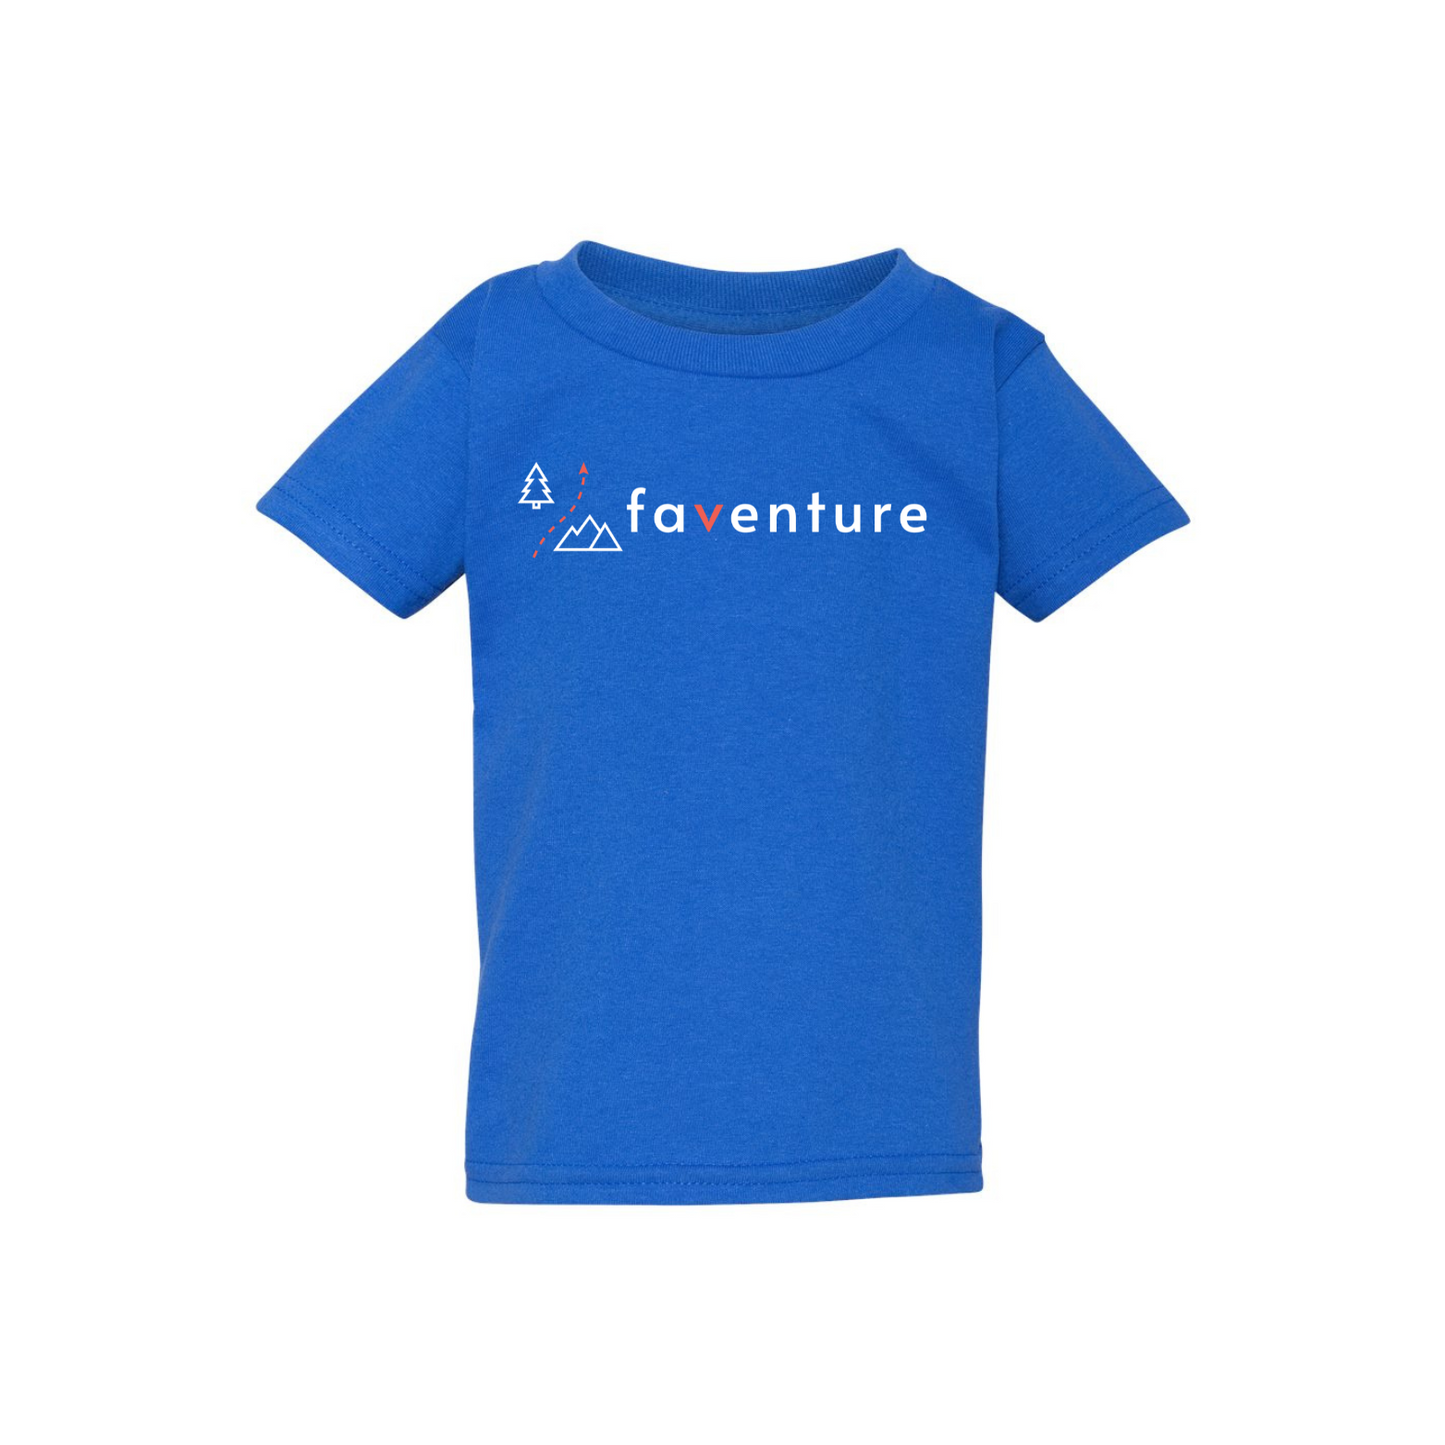 (Faventure) T-shirt bambin